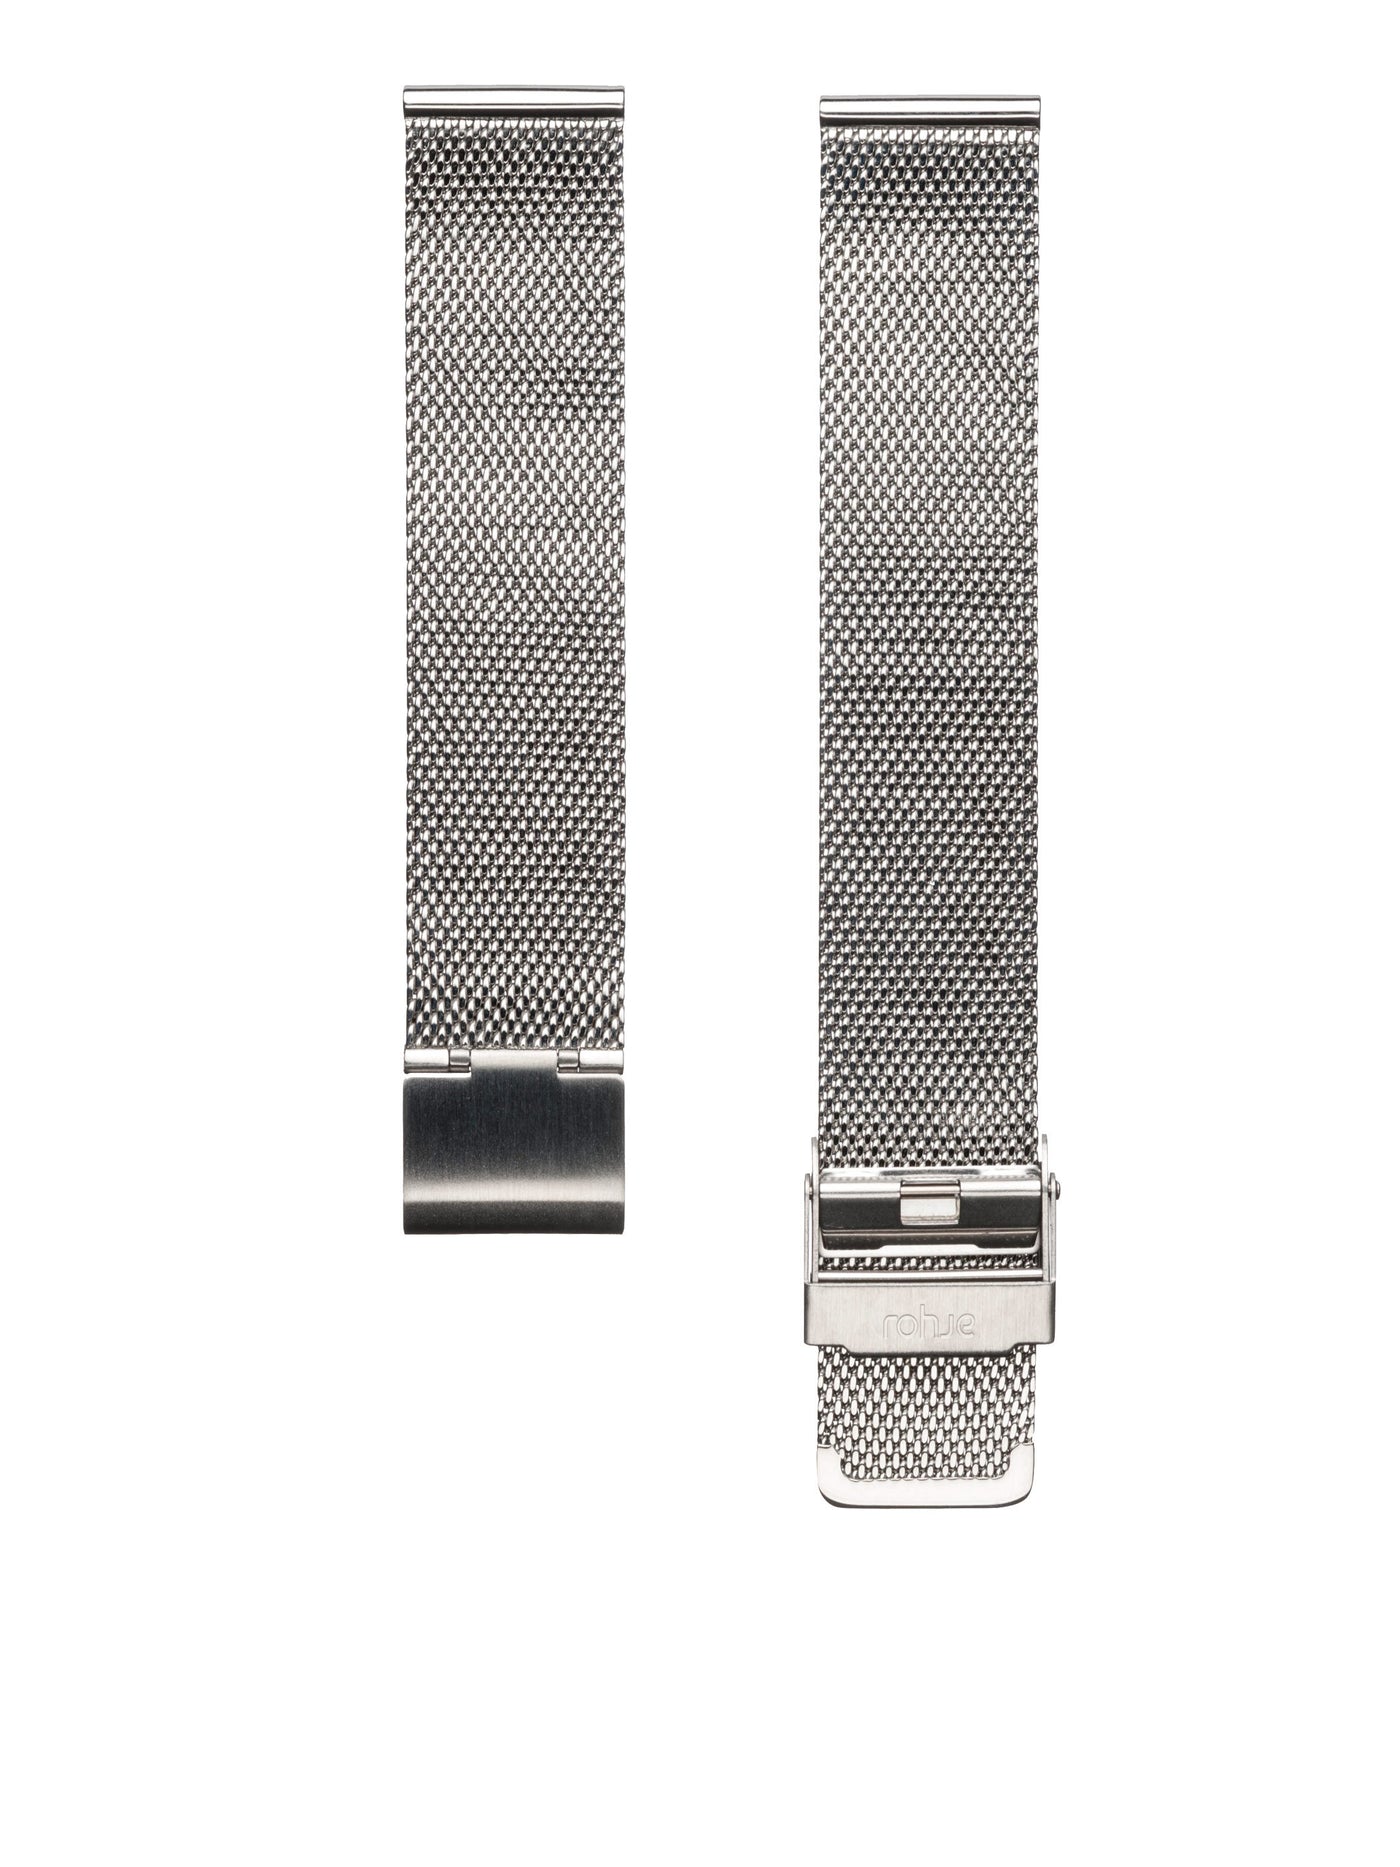 Rohje pikakiinnitys 14mm verkkoranneke #strap_silver